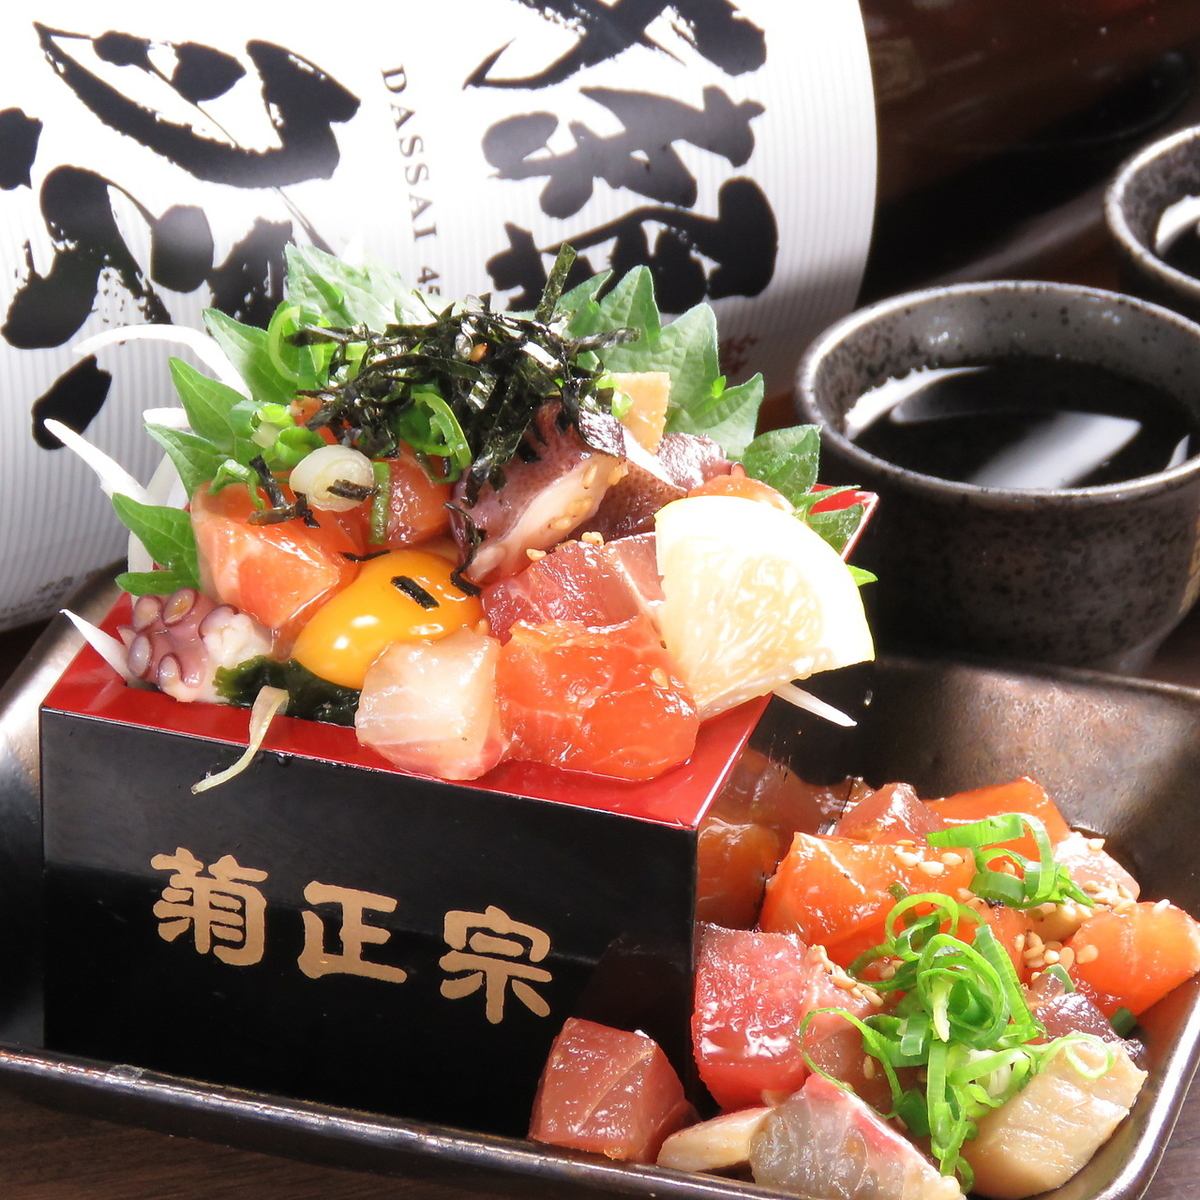 3种生鱼片、5种炸串、肉味噌烤饭团等2H无限畅饮3500日元